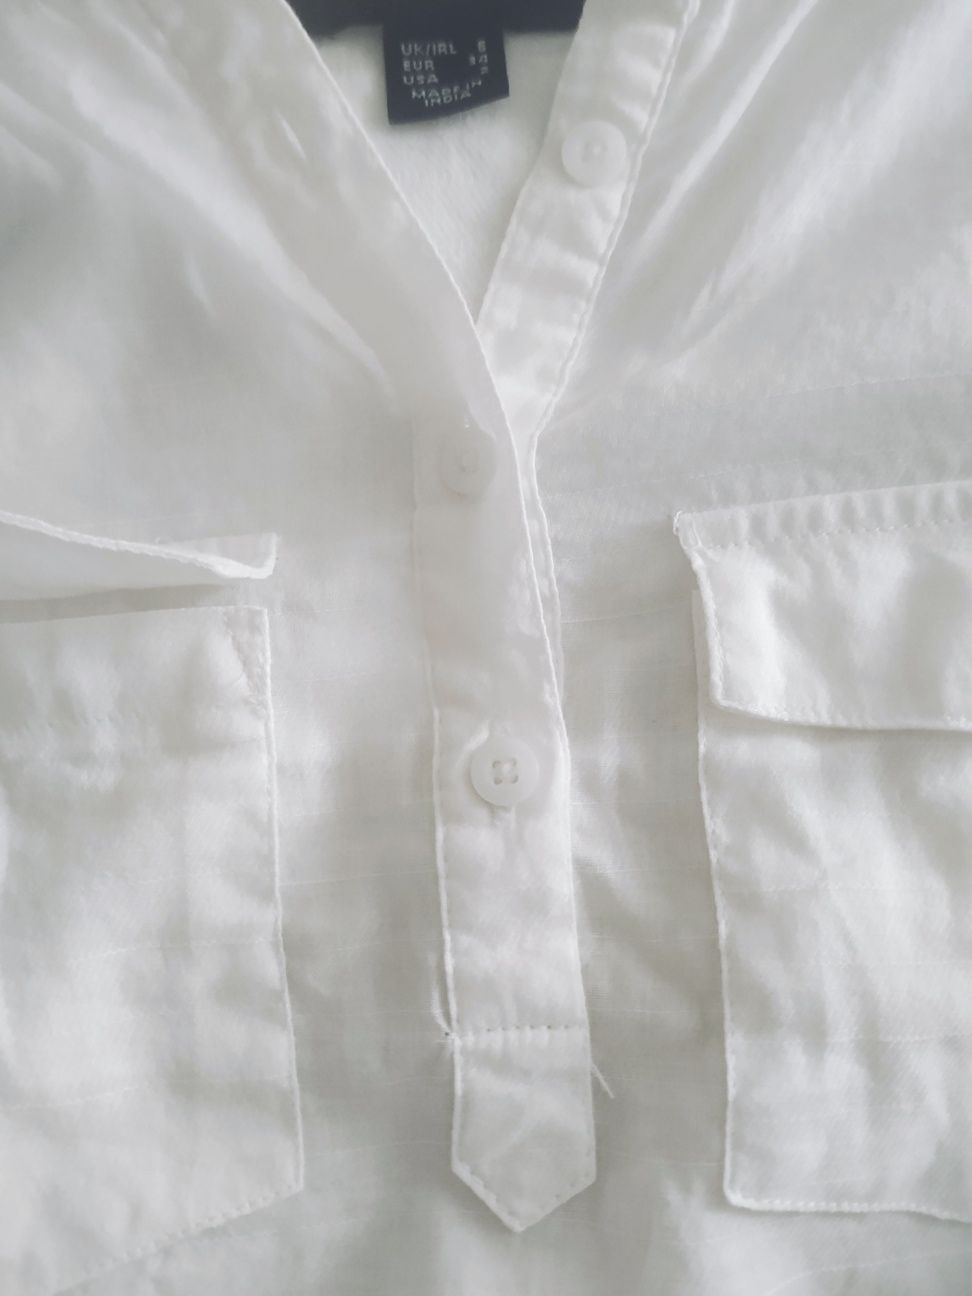 Koszula biała bez rękawów Atmosphere Primark 34 36 bawełna kieszonki